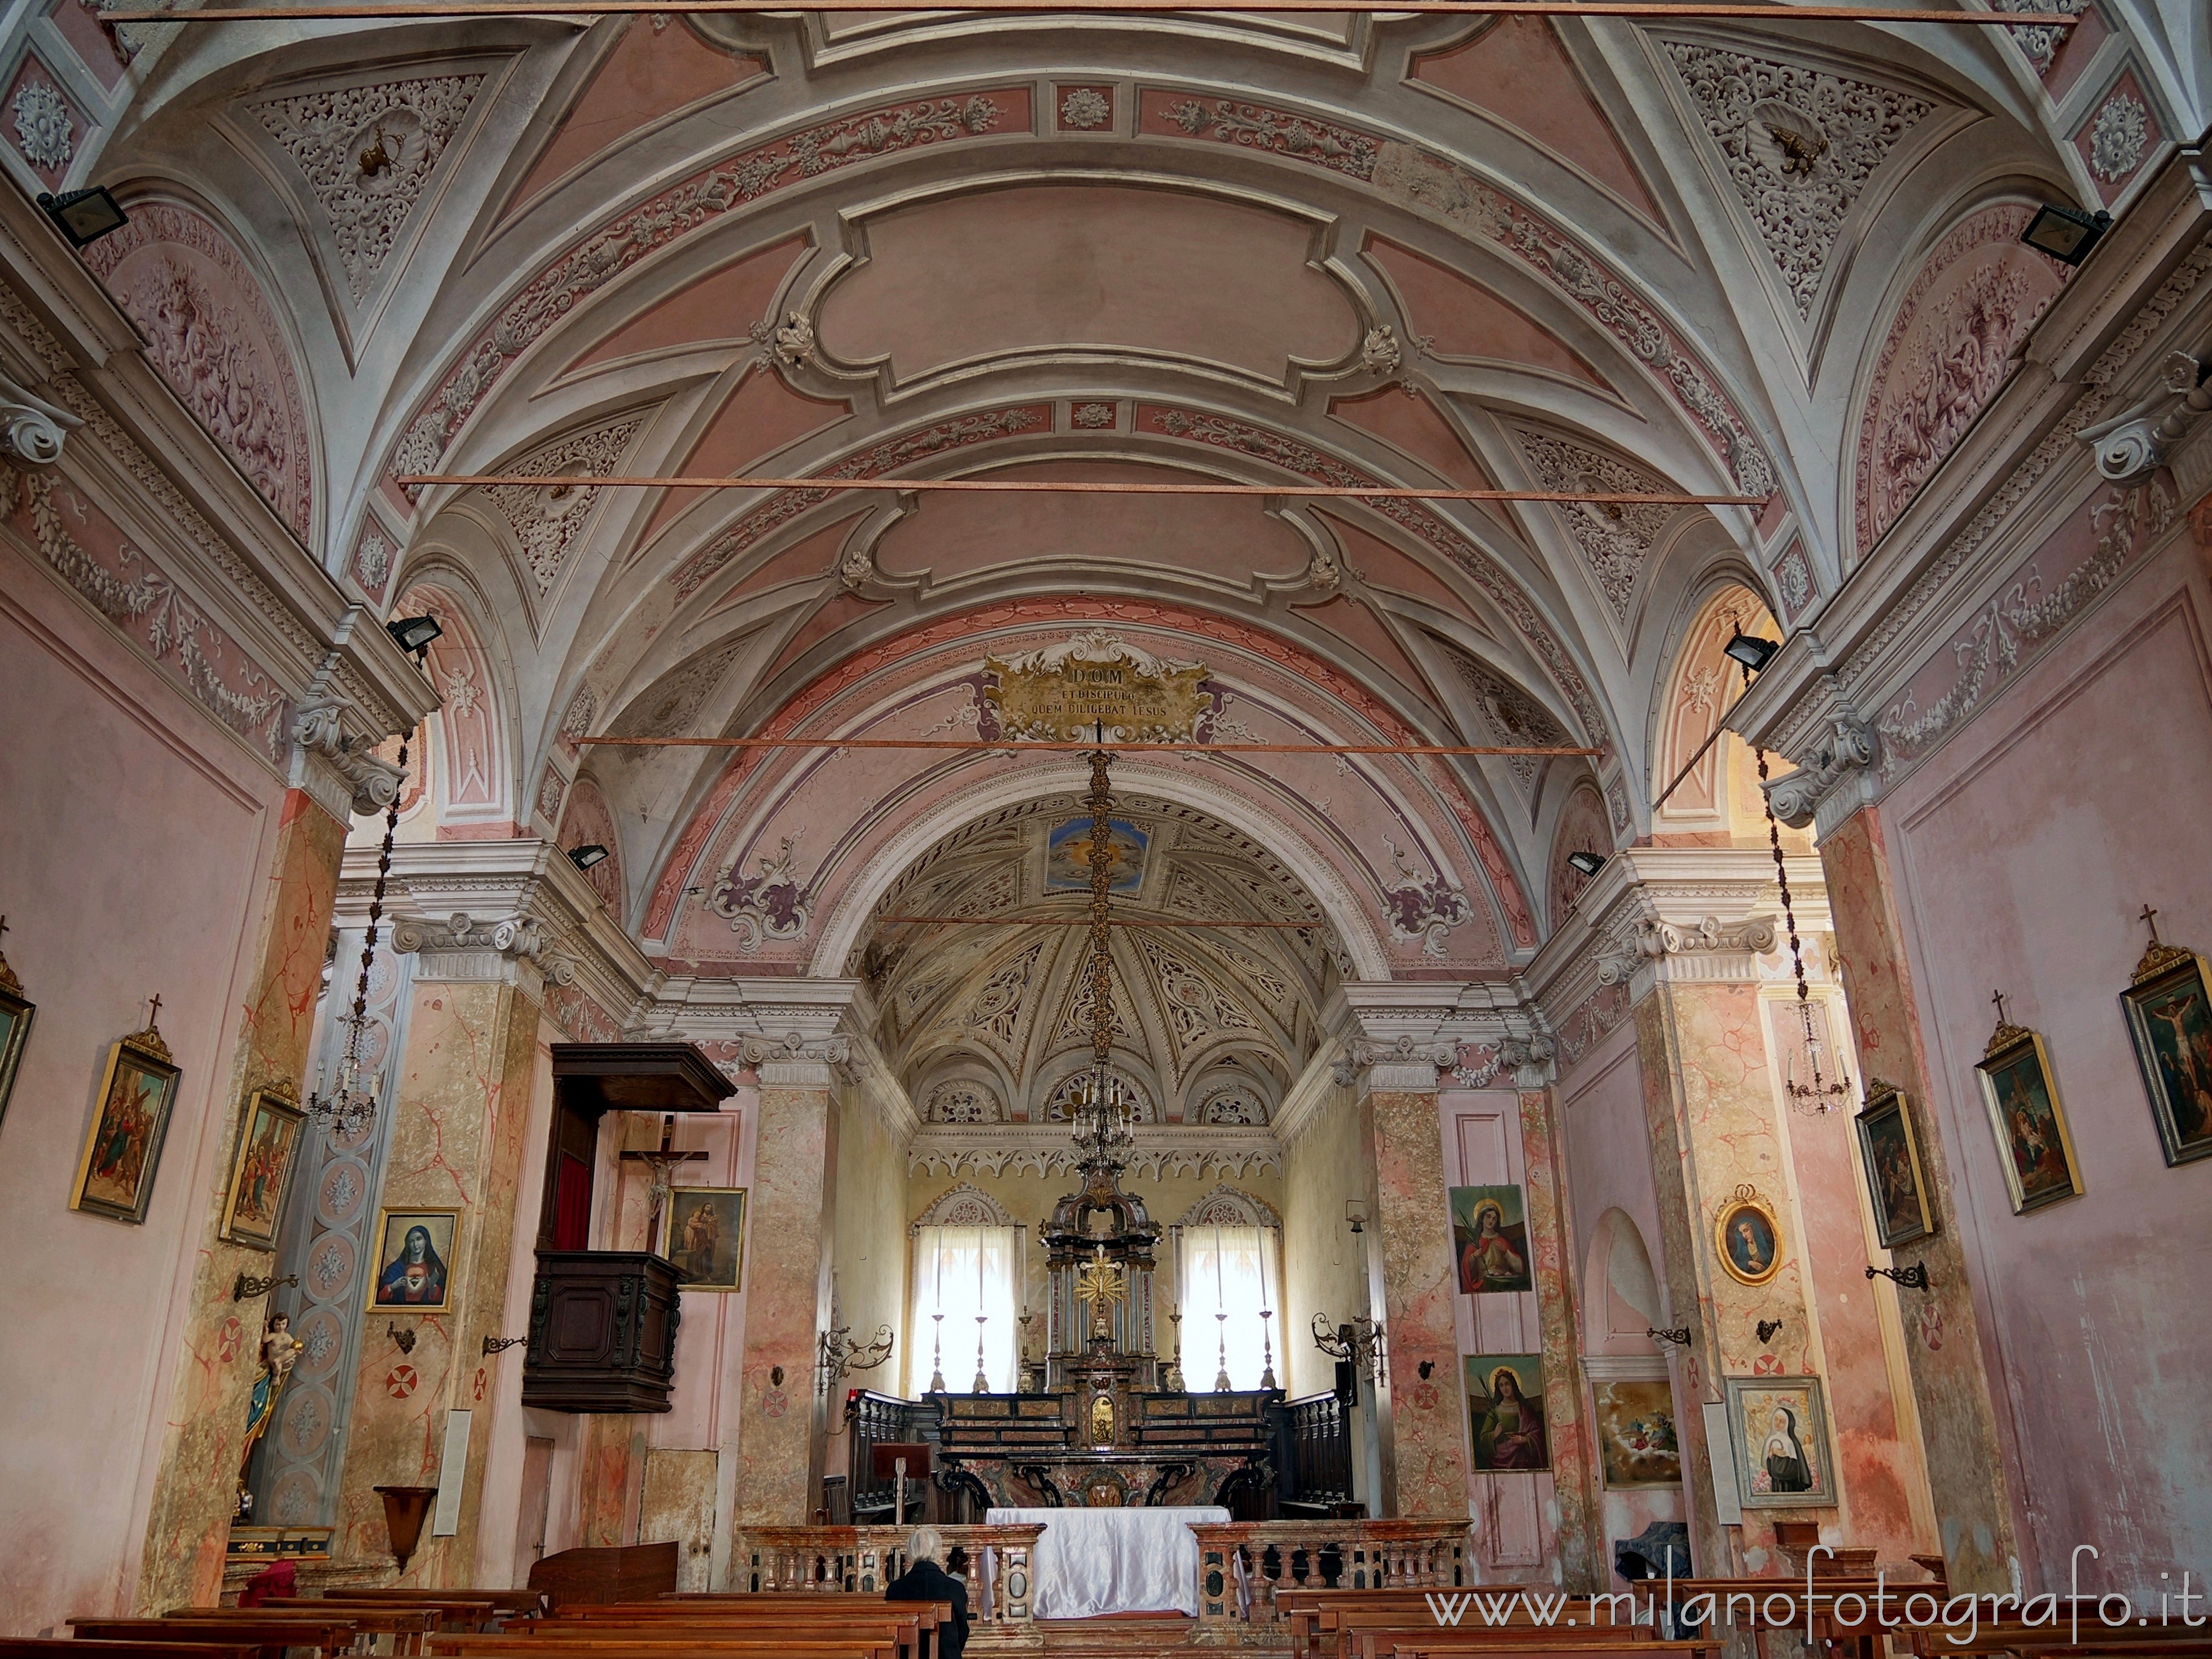 Sillavengo (Novara, Italy): Interior of the Church of San Giovanni - Sillavengo (Novara, Italy)